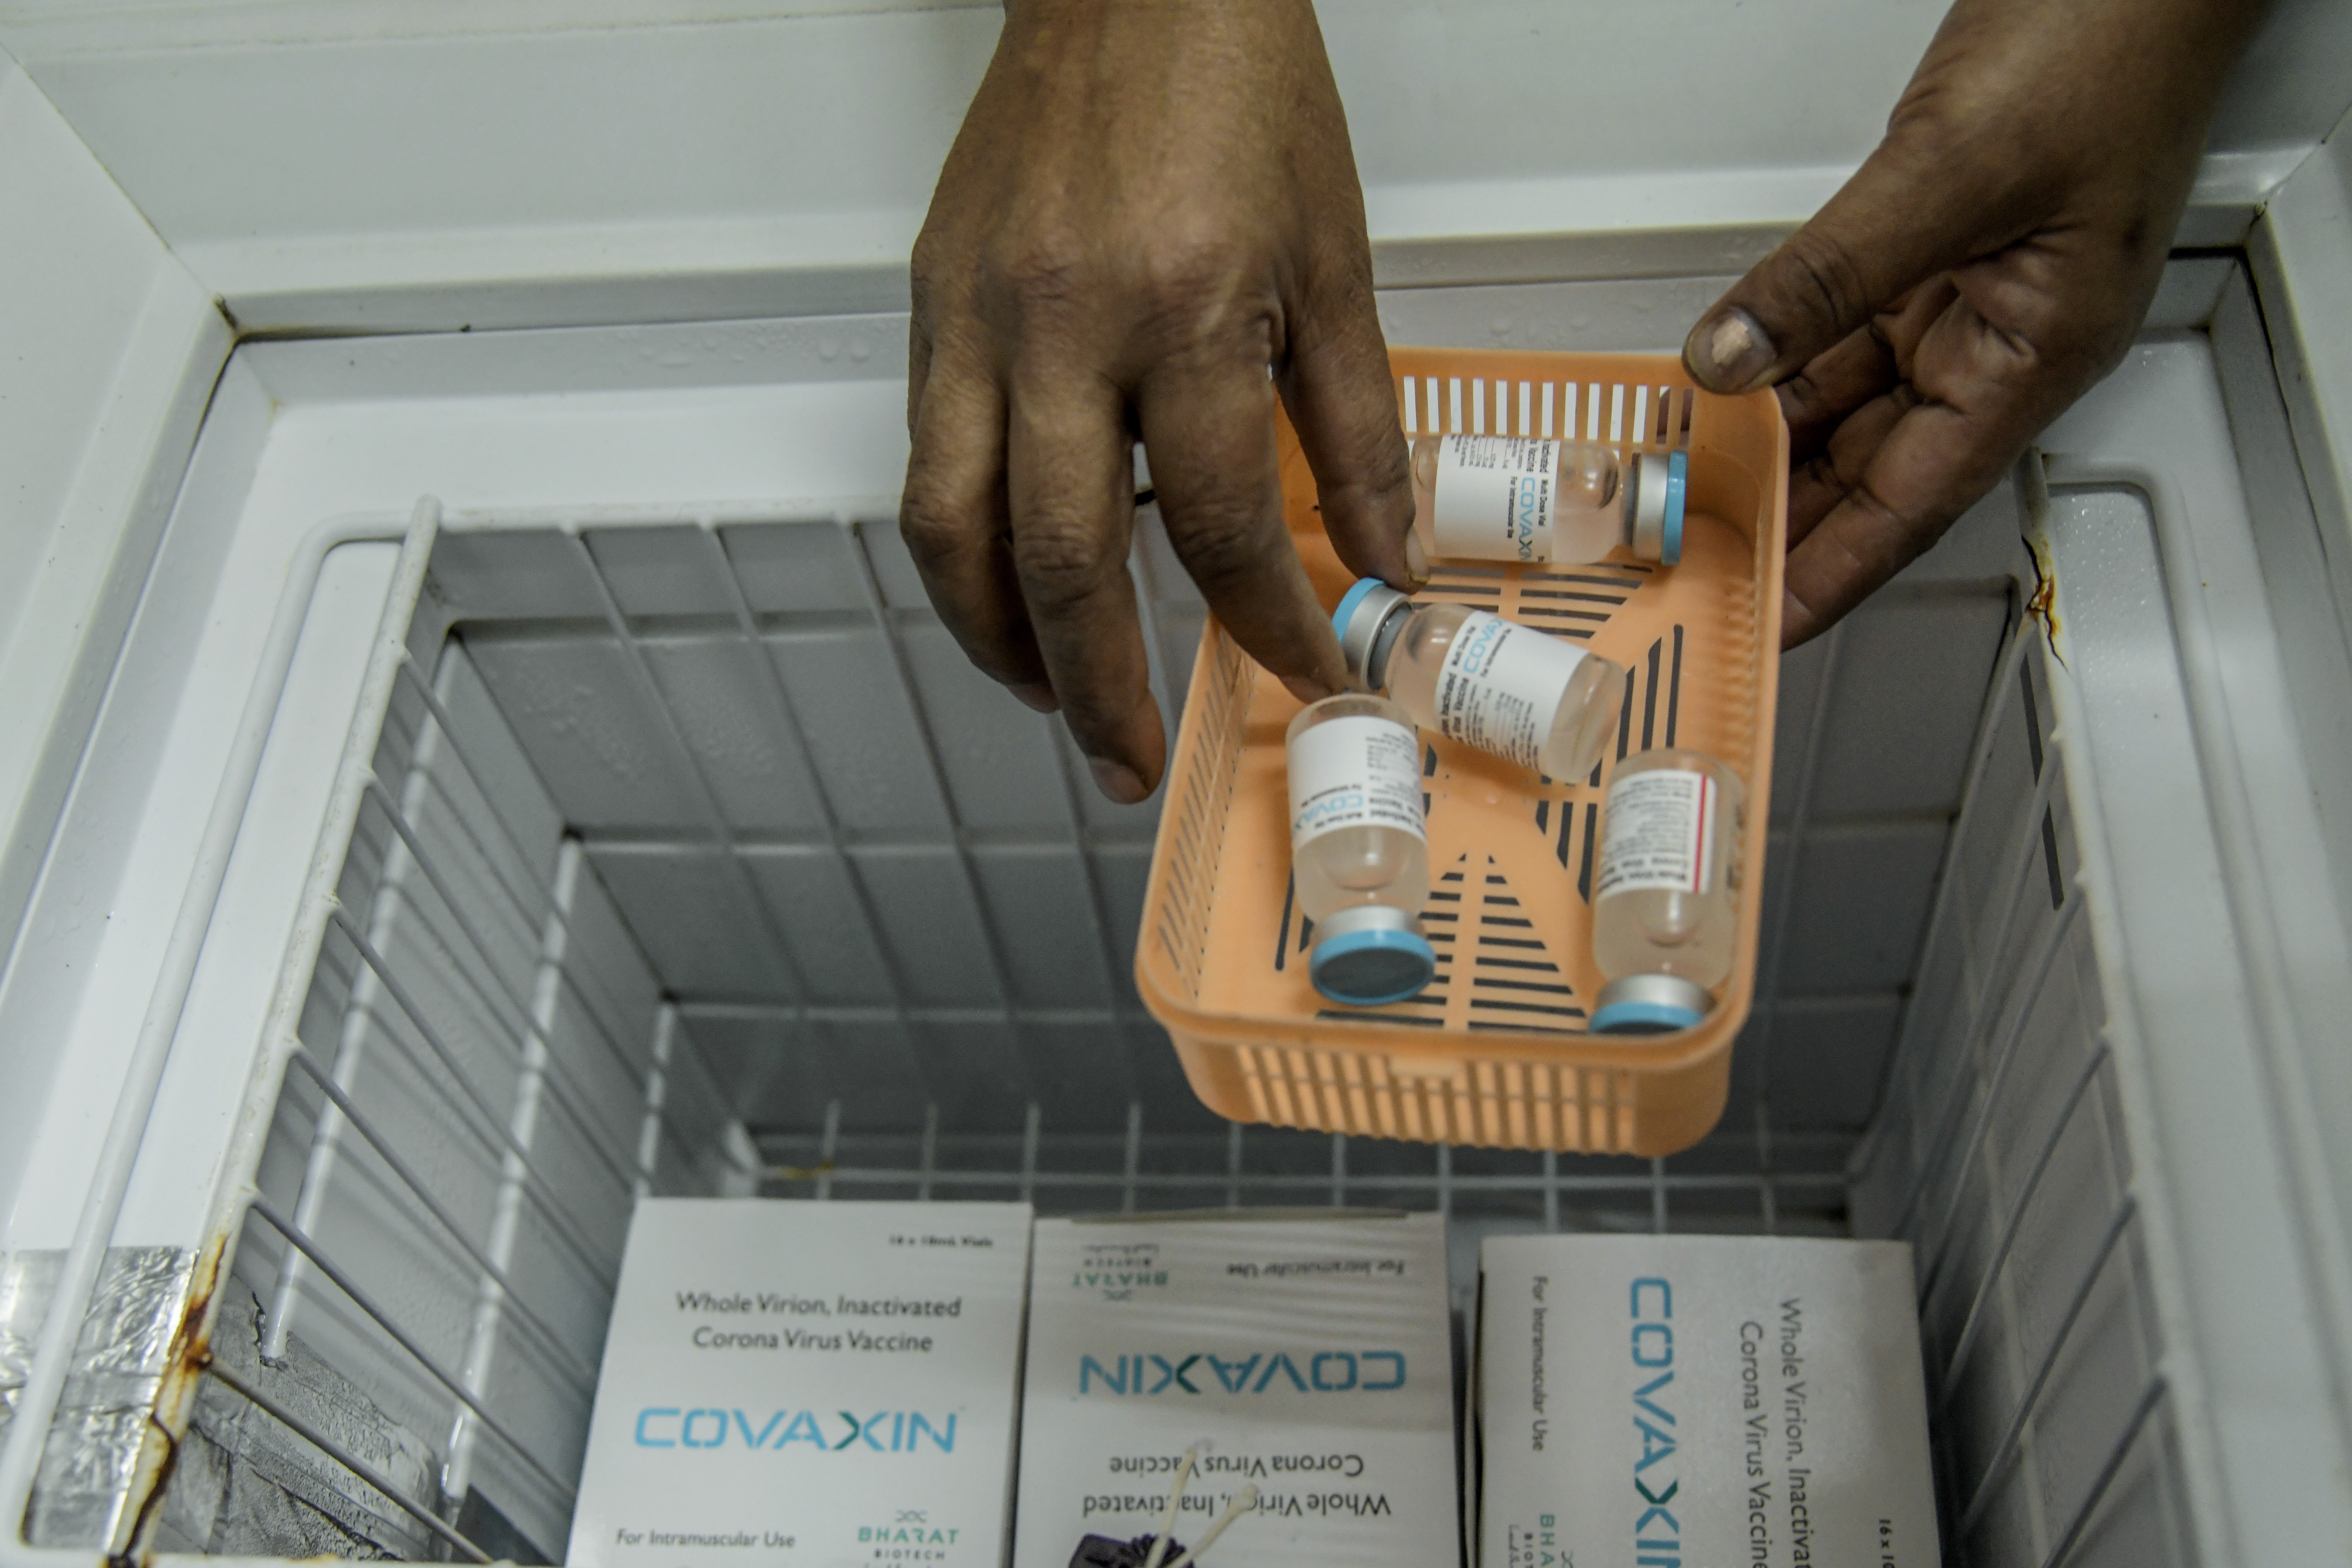 La vacuna de Covaxin, hecha en India y aprobada para usarse en ese país, pero no por la Organización Mundial de la Salud, en Pune, India, el 15 de enero de 2021. (Foto Prensa Libre: Atul Loke/The New York Times)